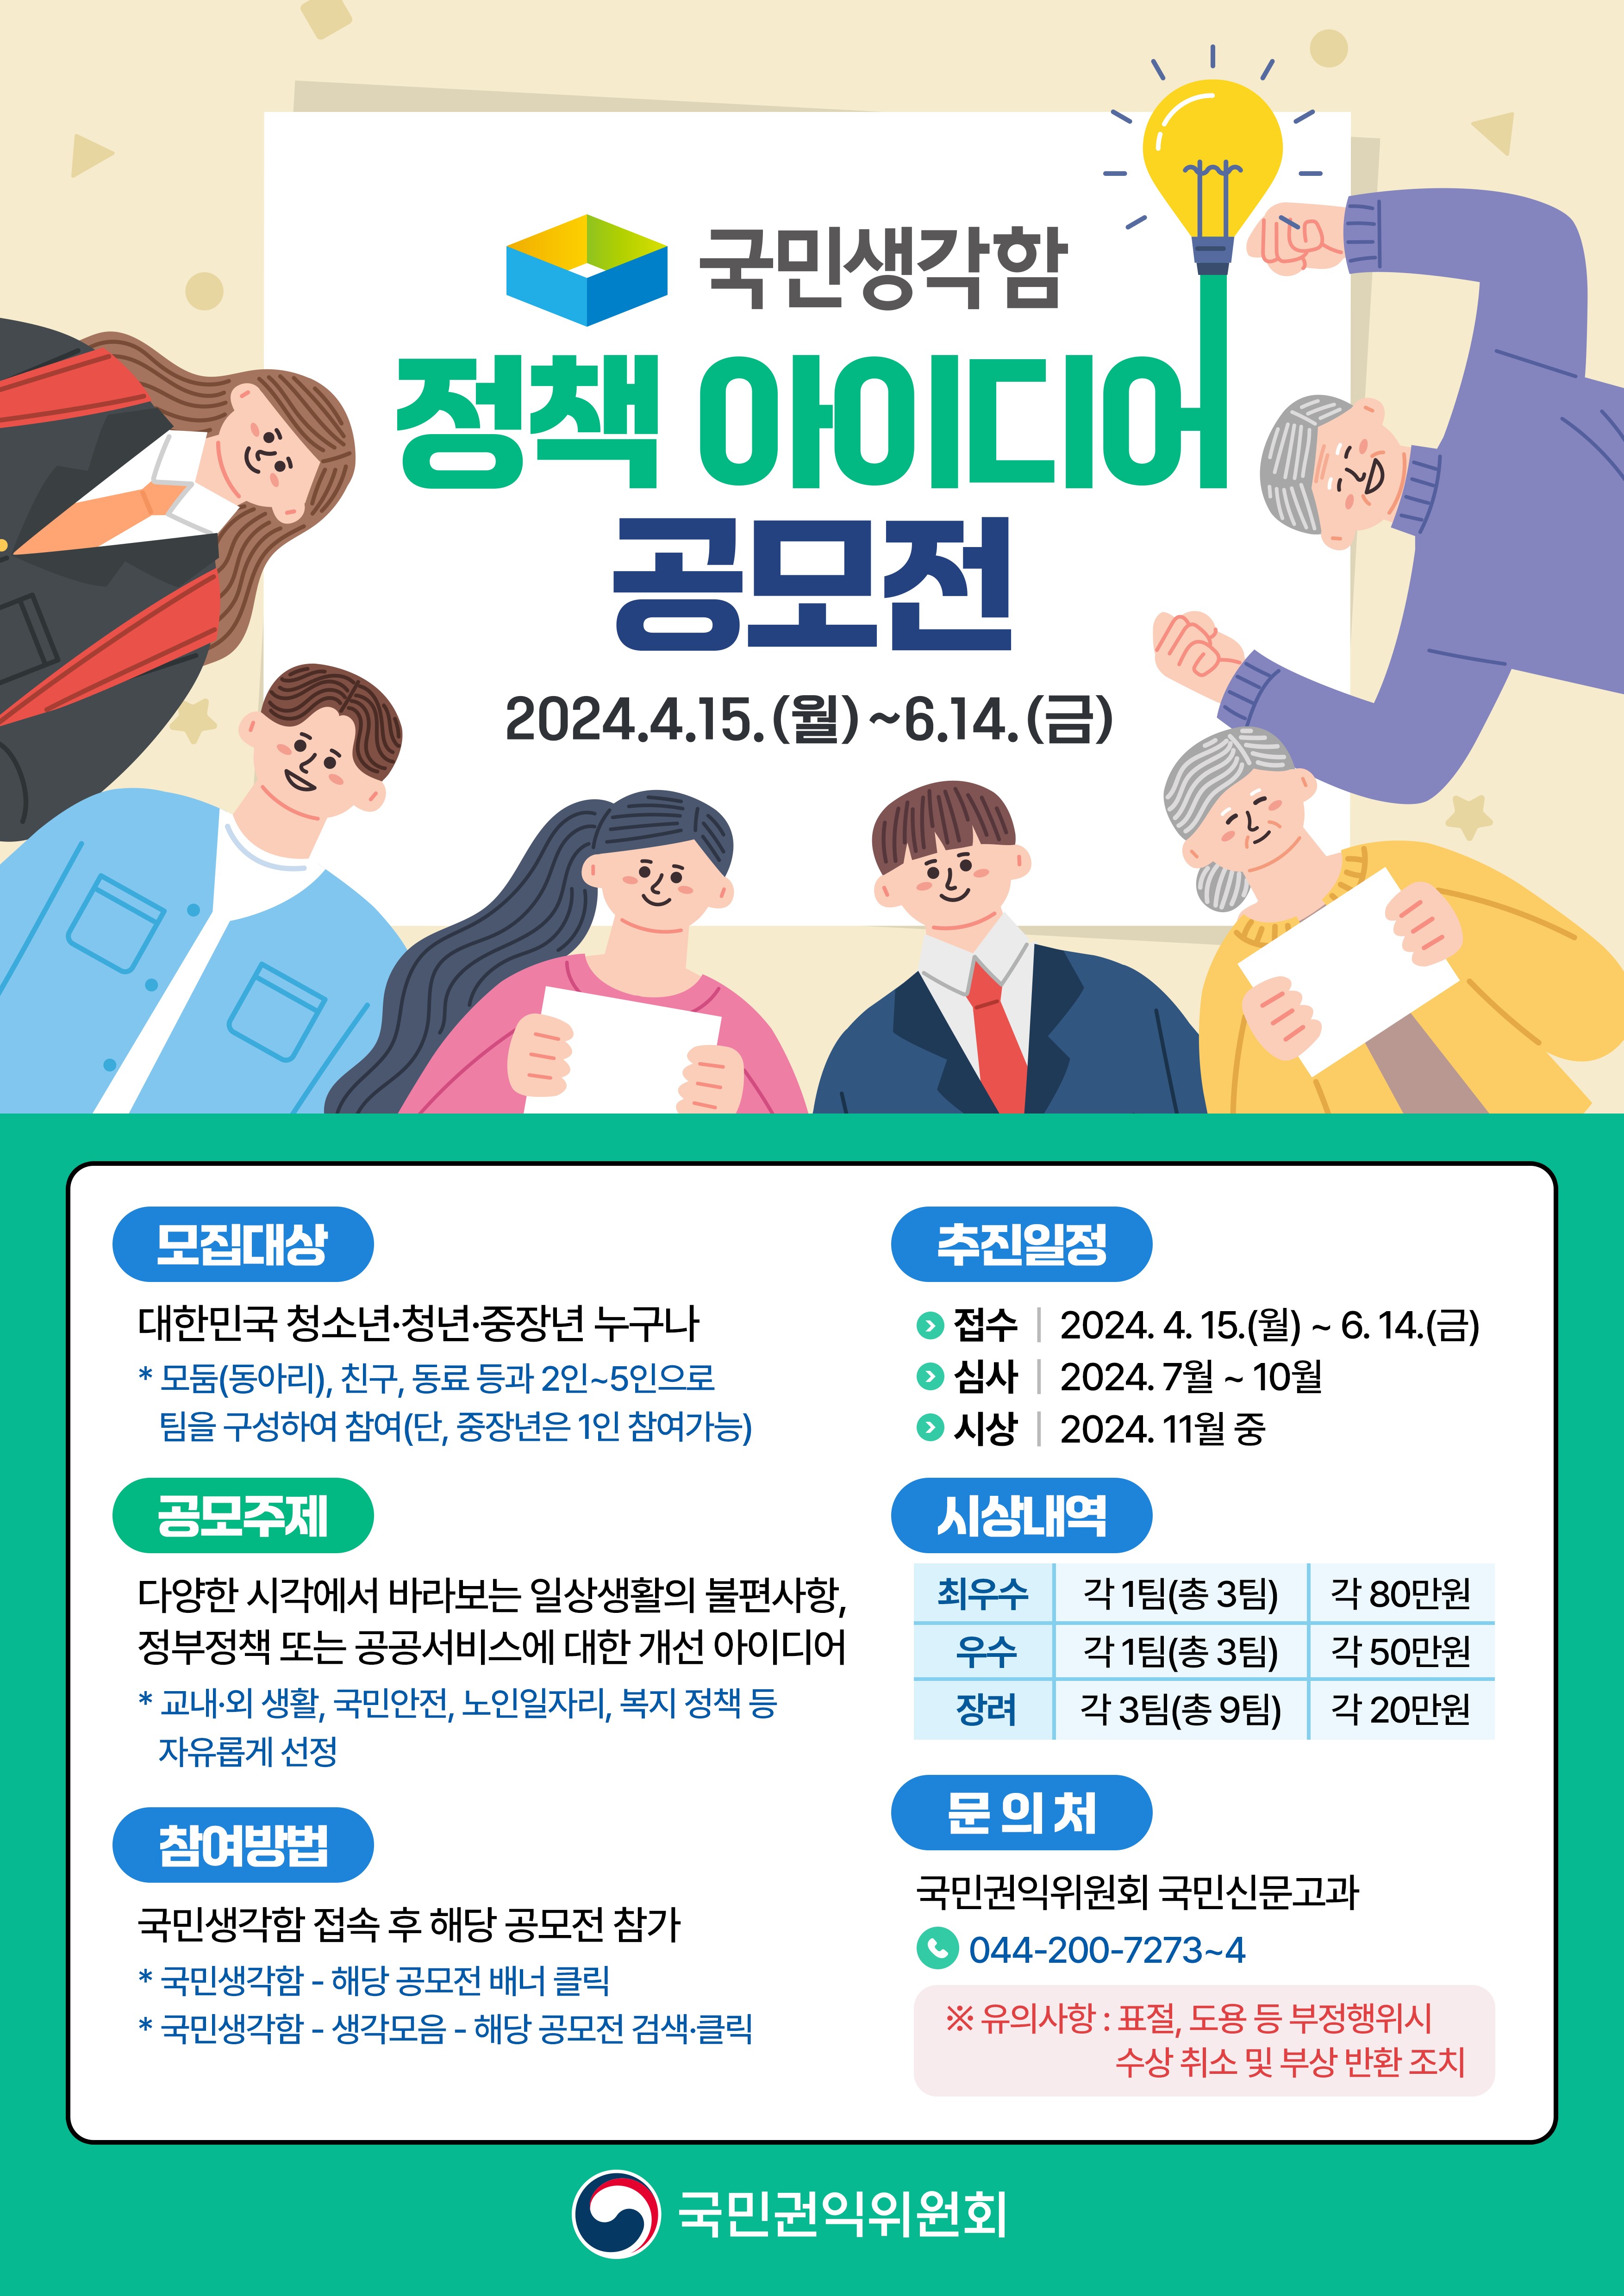 2024년 국민생각함 정책 아이디어 공모전
~2024.06.14
국민권익귀원회 국민신문고과 044-200-7273